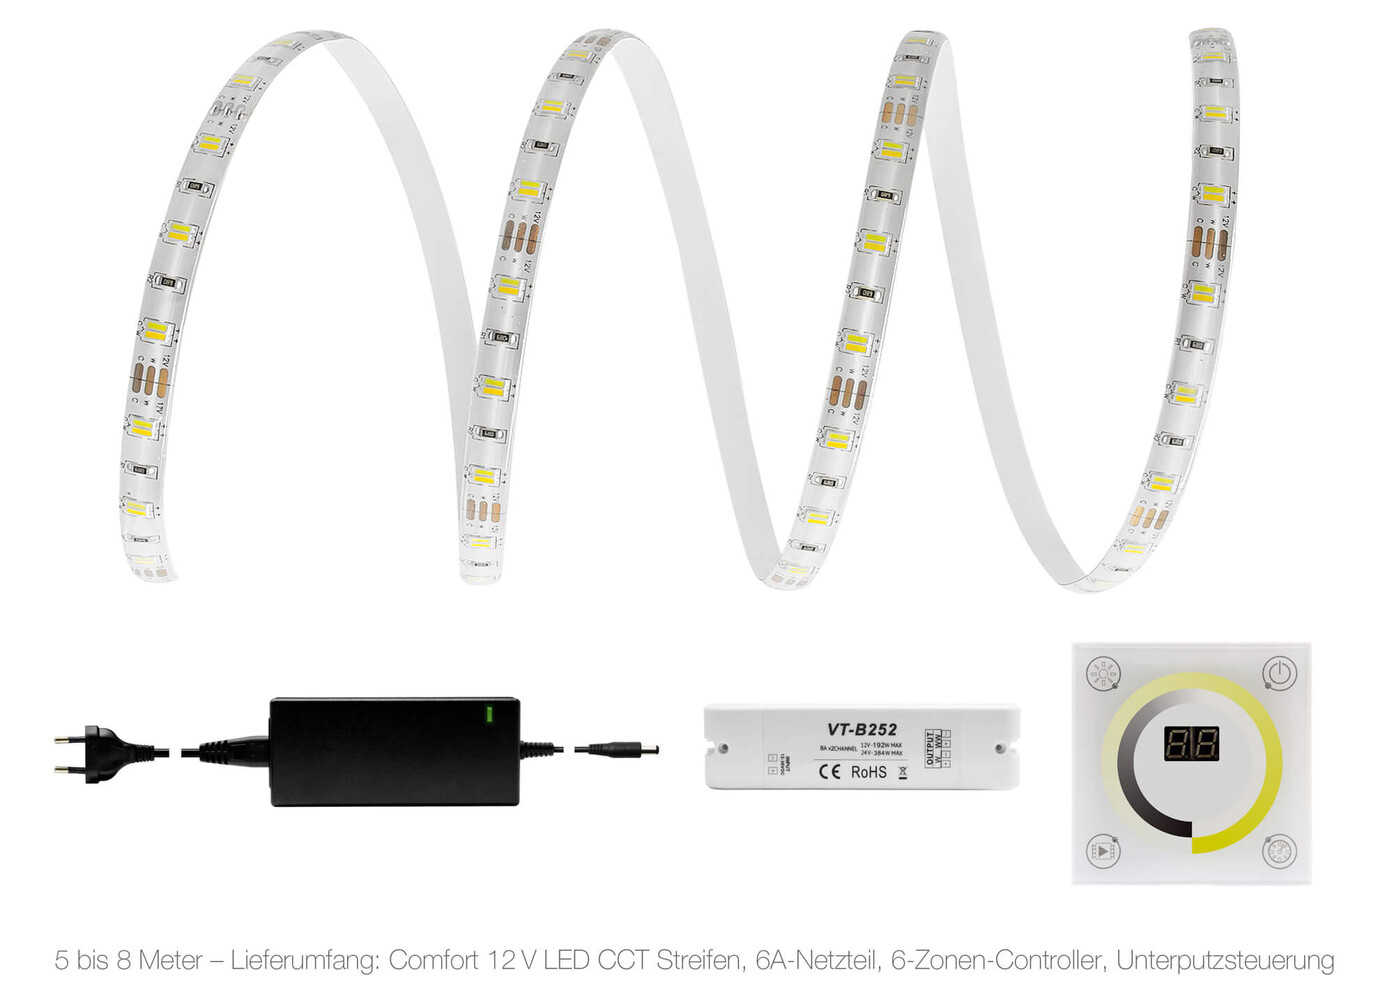 Hochwertiger LED Streifen von LED Universum mit optimaler Beleuchtung und geradlinigem Design